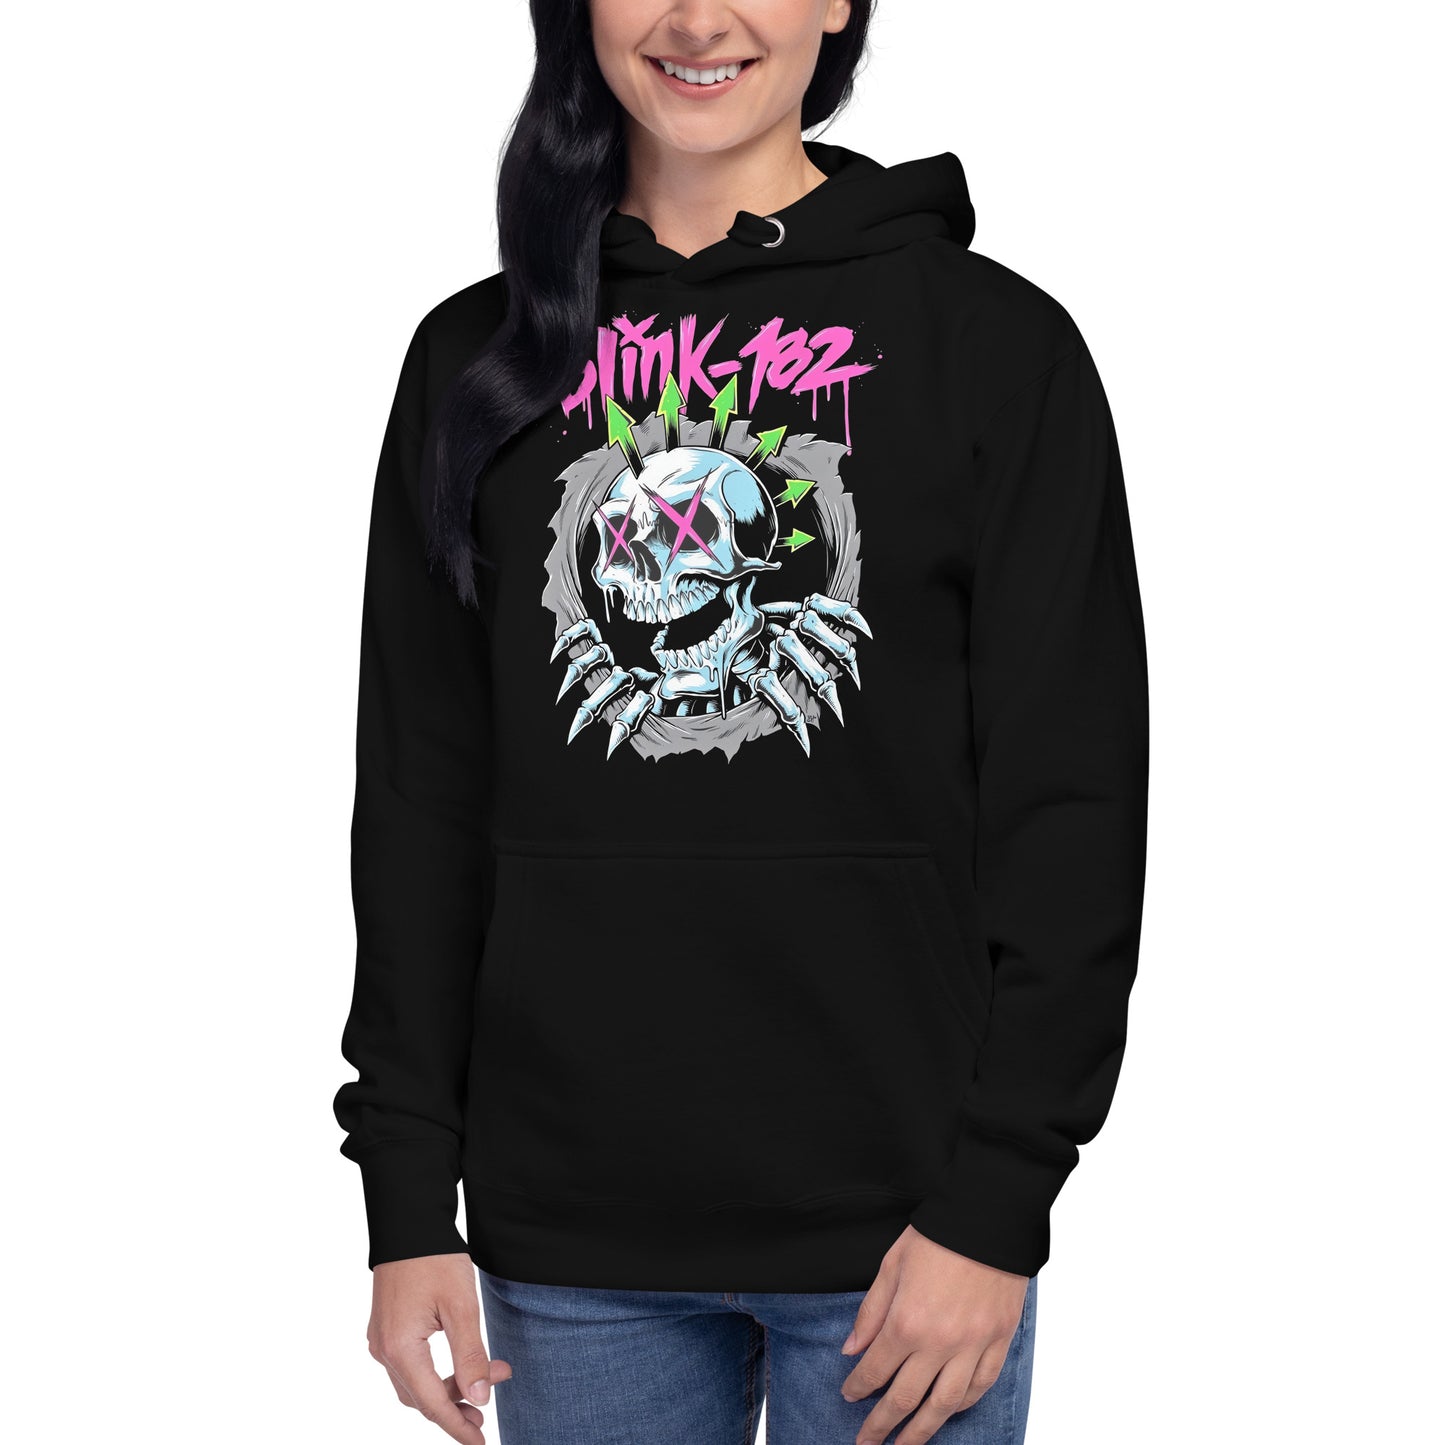 Hoodie Blink 182 Bones, Disponible en la mejor tienda online para comprar tu merch favorita, la mejor Calidad, compra Ahora en Superstar!